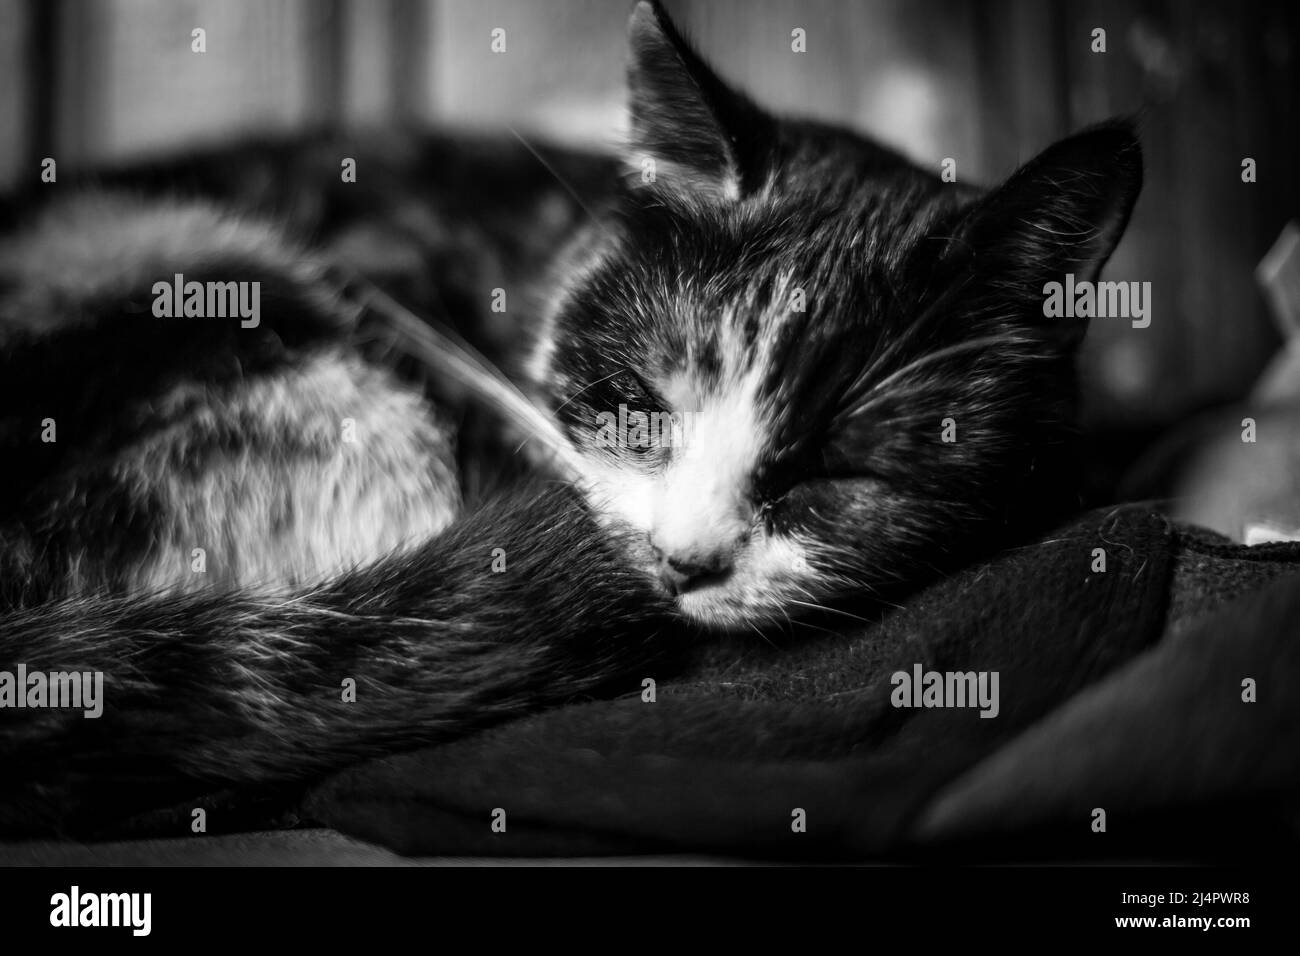 Sleeping tortoiseshell cat Stock Photo